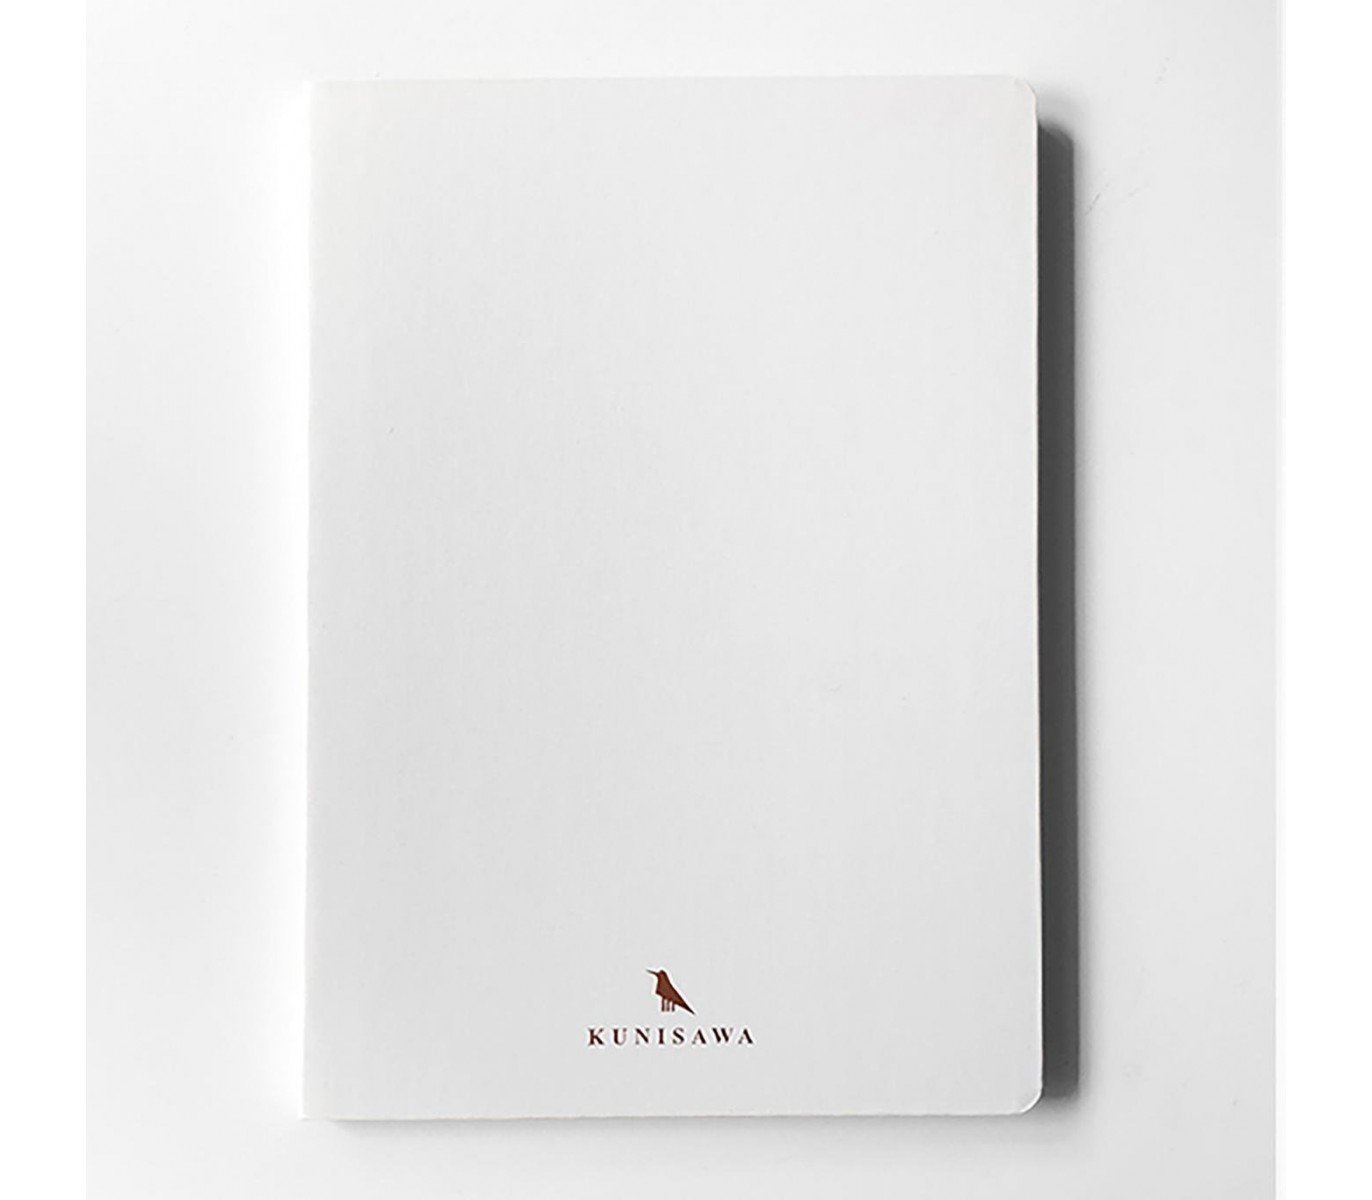 Kunisawa Slim Notebook - White